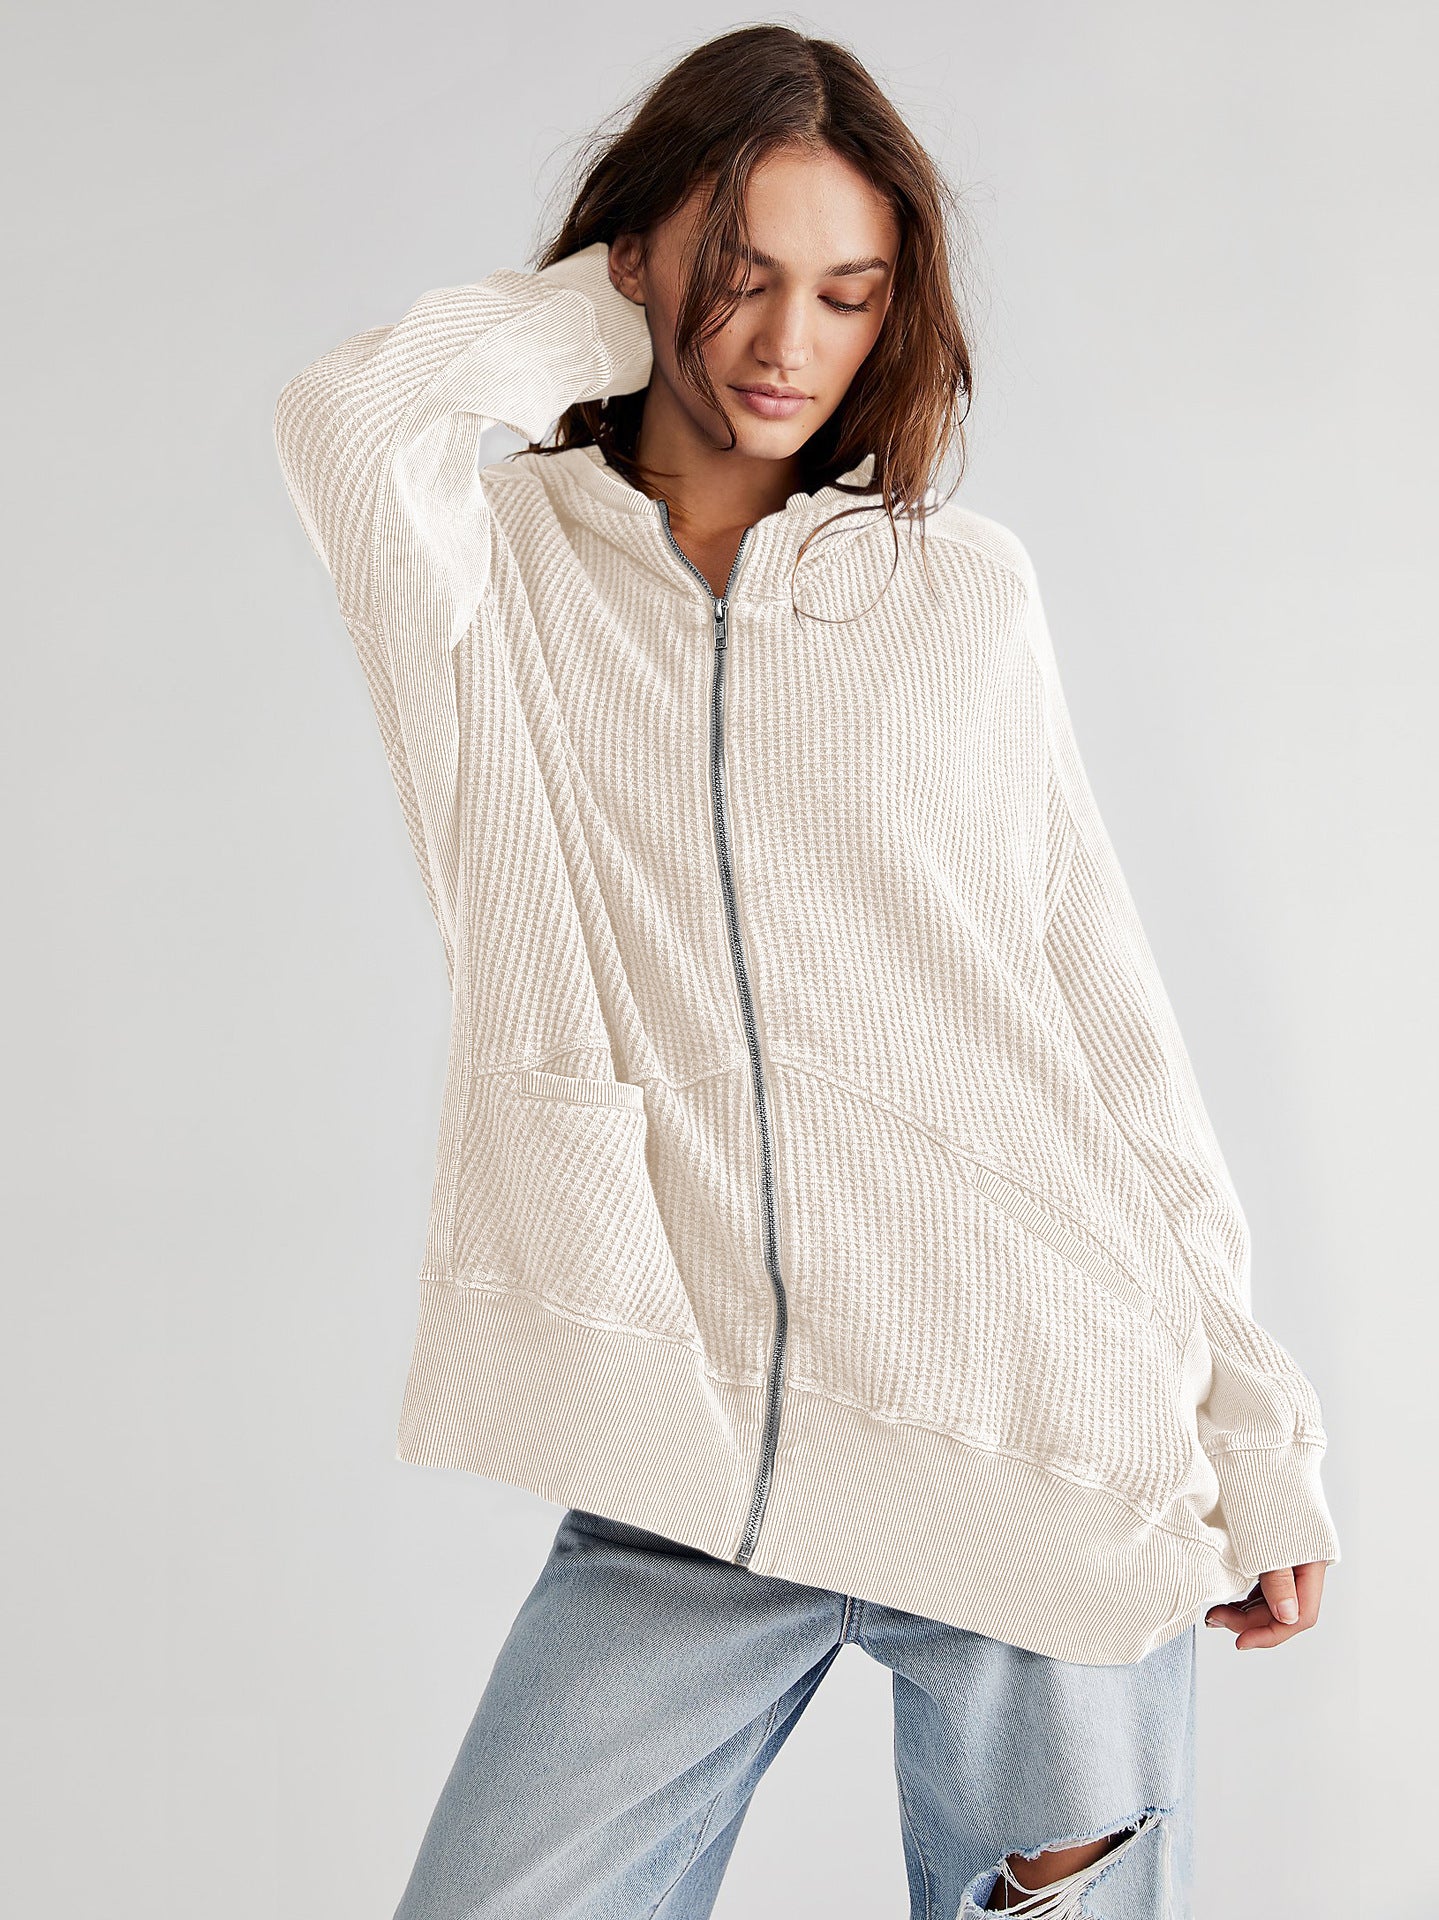 Cardigan Zipper Sweater Home Wear Women Outerwear Hoodie Long Coat